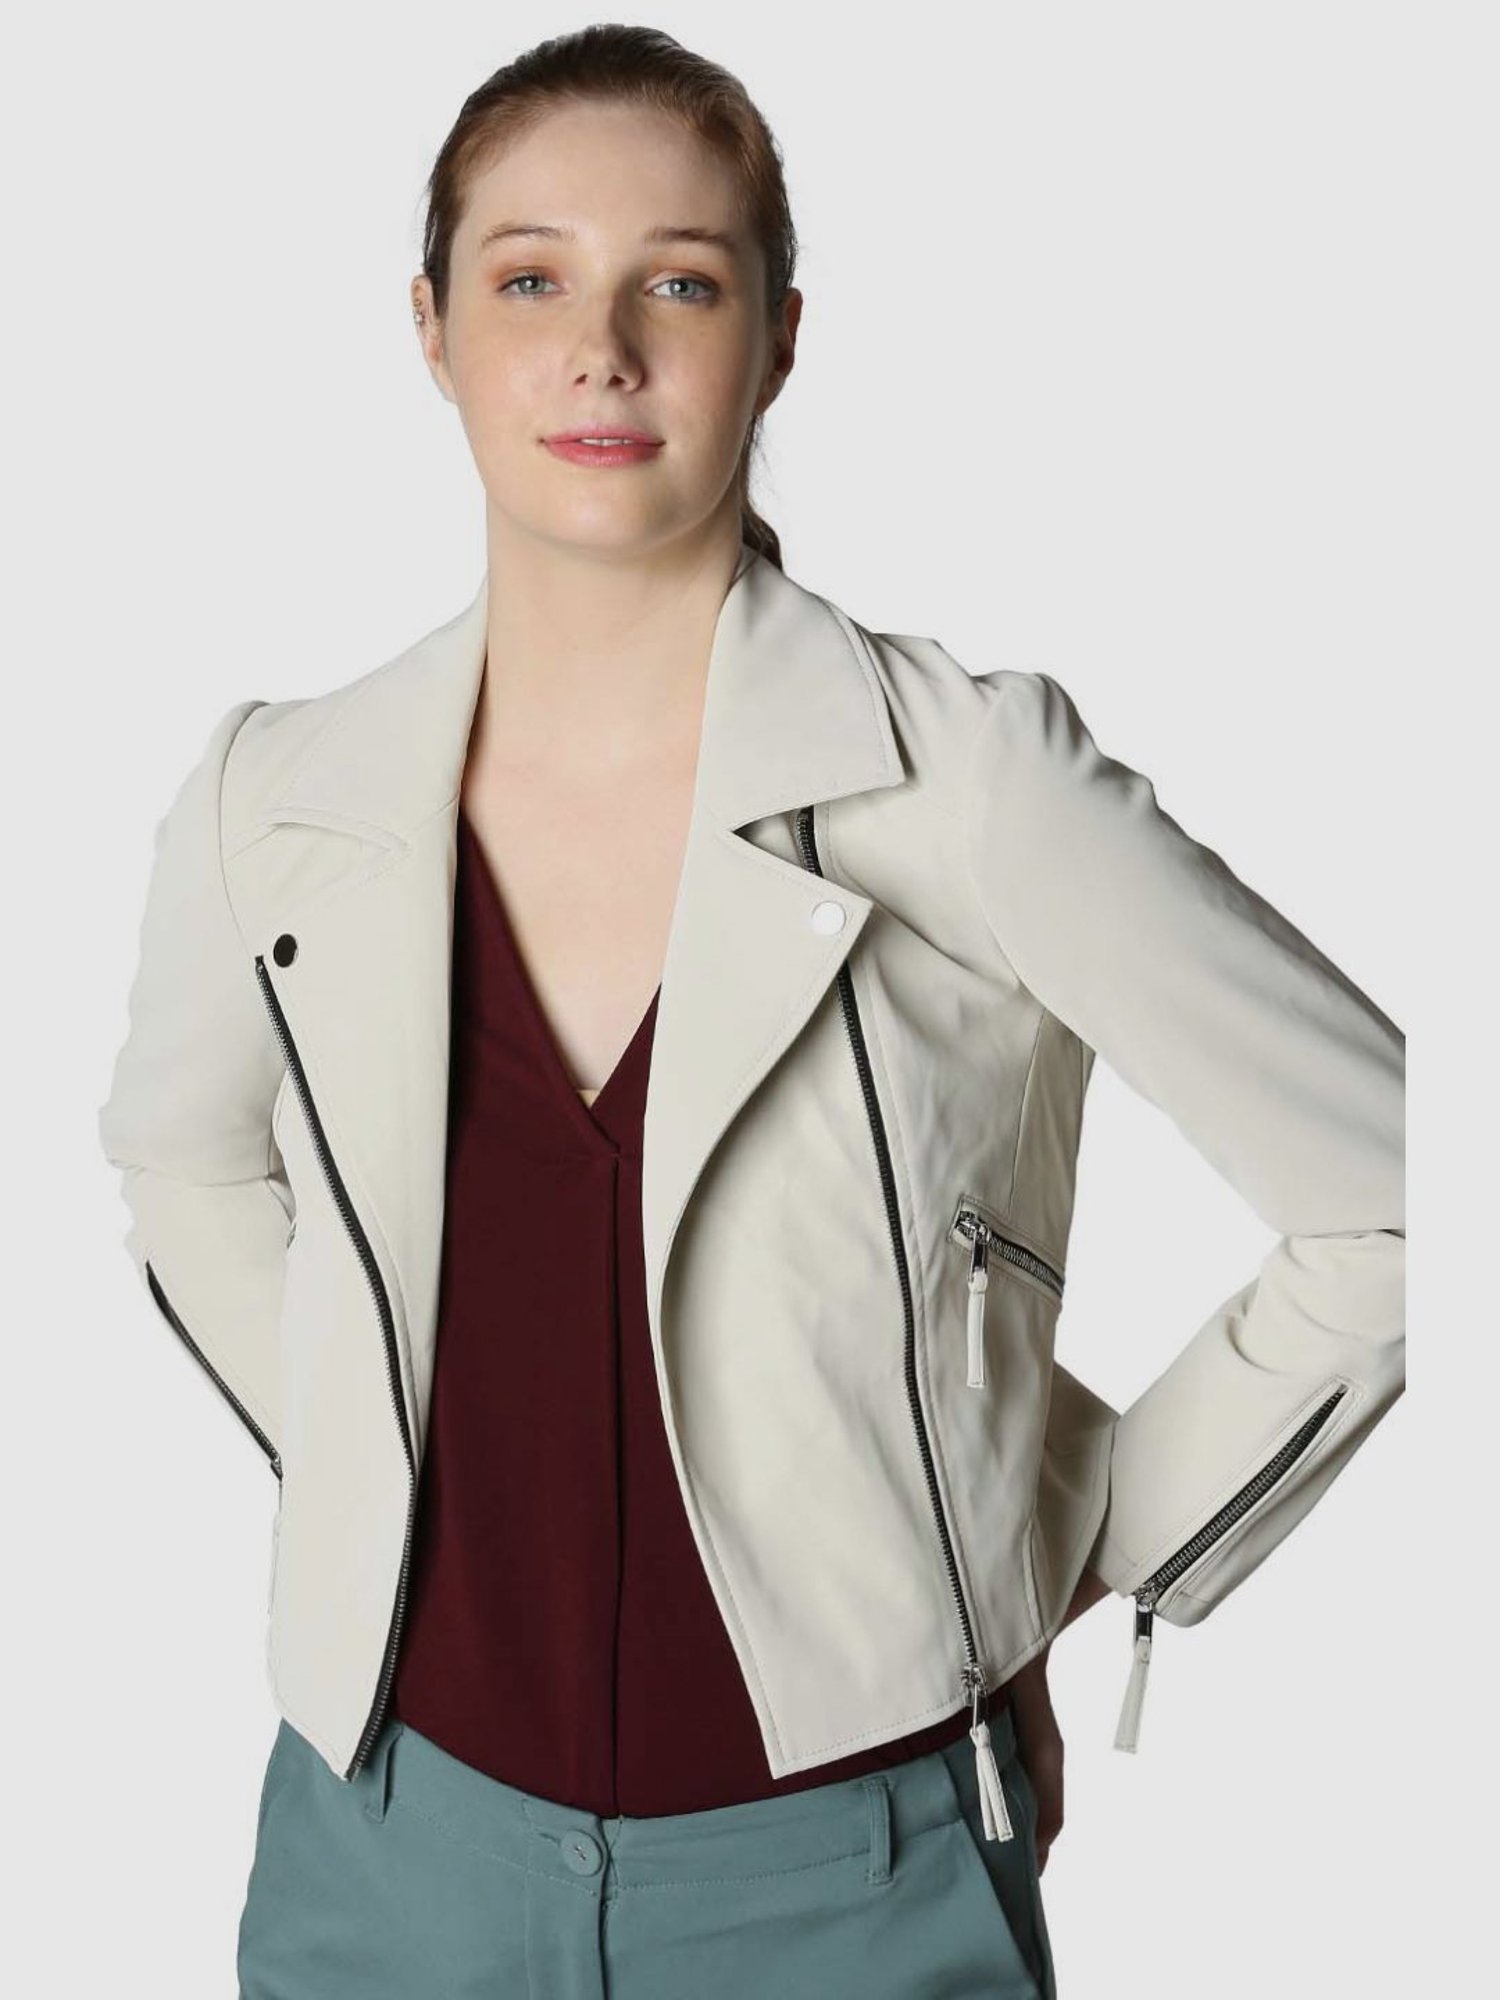 Vero Moda Off-White Regular Fit Jacket for Women Online @ Tata CLiQ